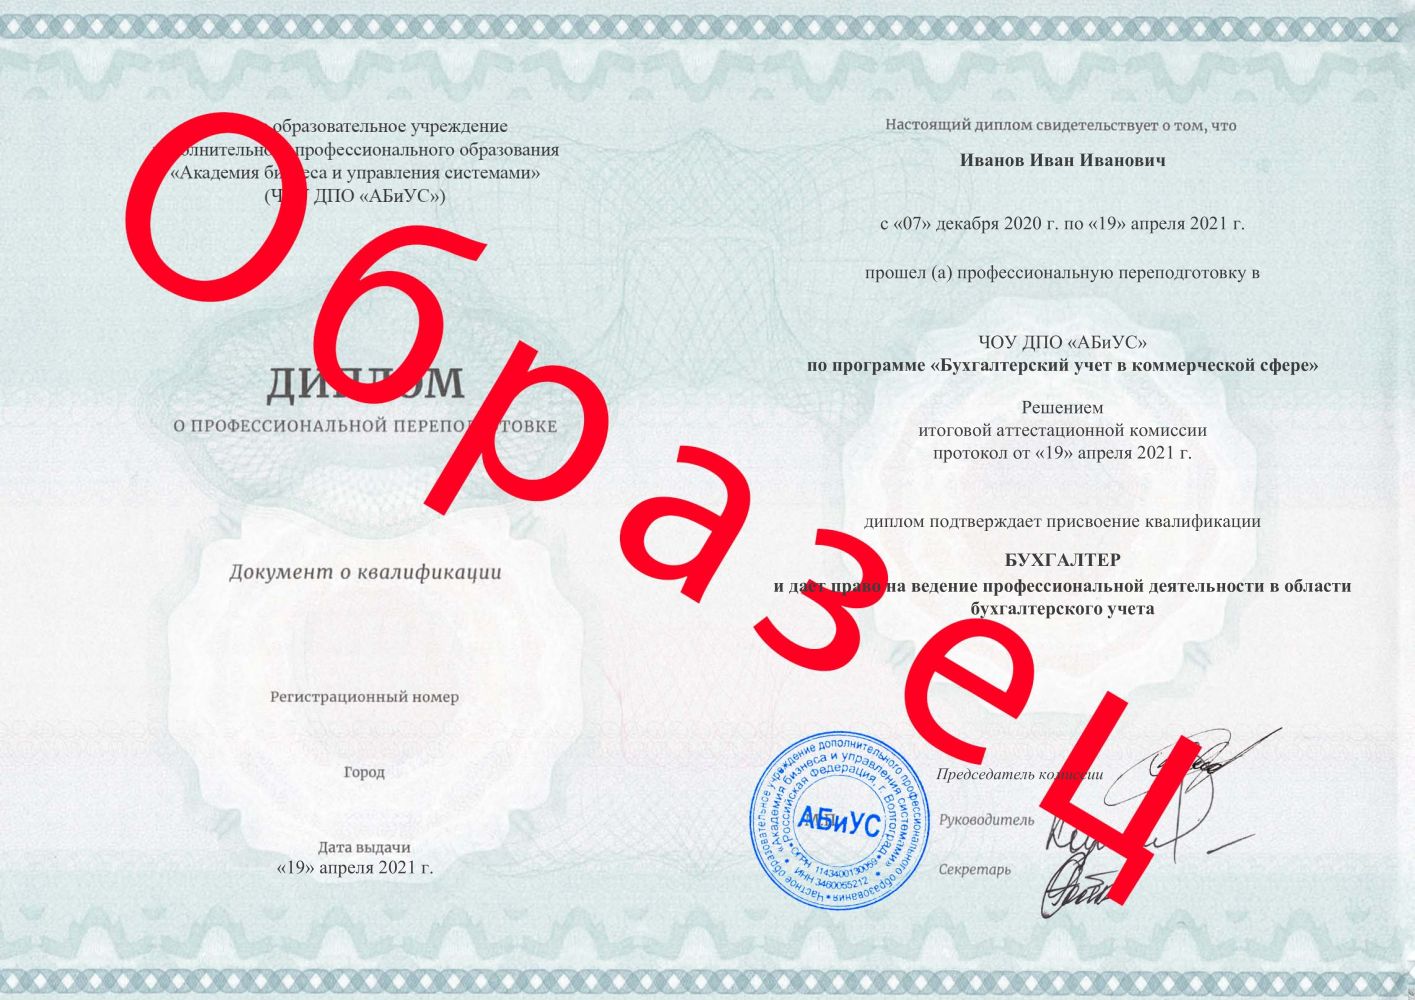 Диплом Бухгалтерский учет в коммерческой сфере 510 часов 14700 руб.